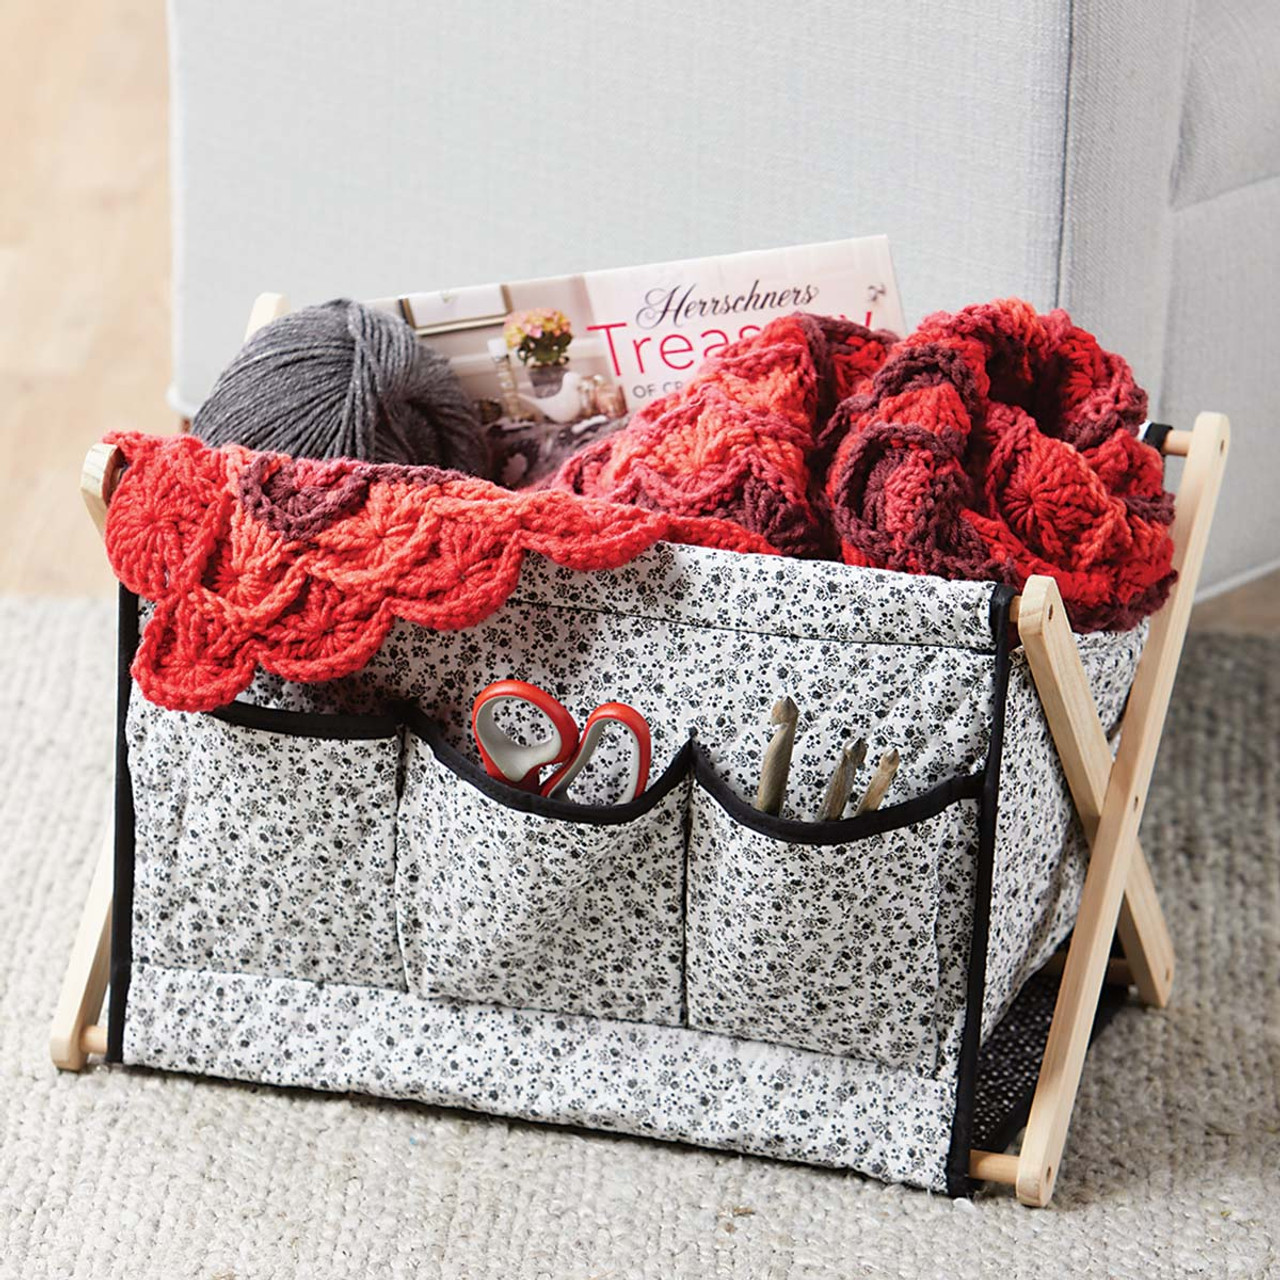 Fold-Up Knitting & Yarn Storage Caddy